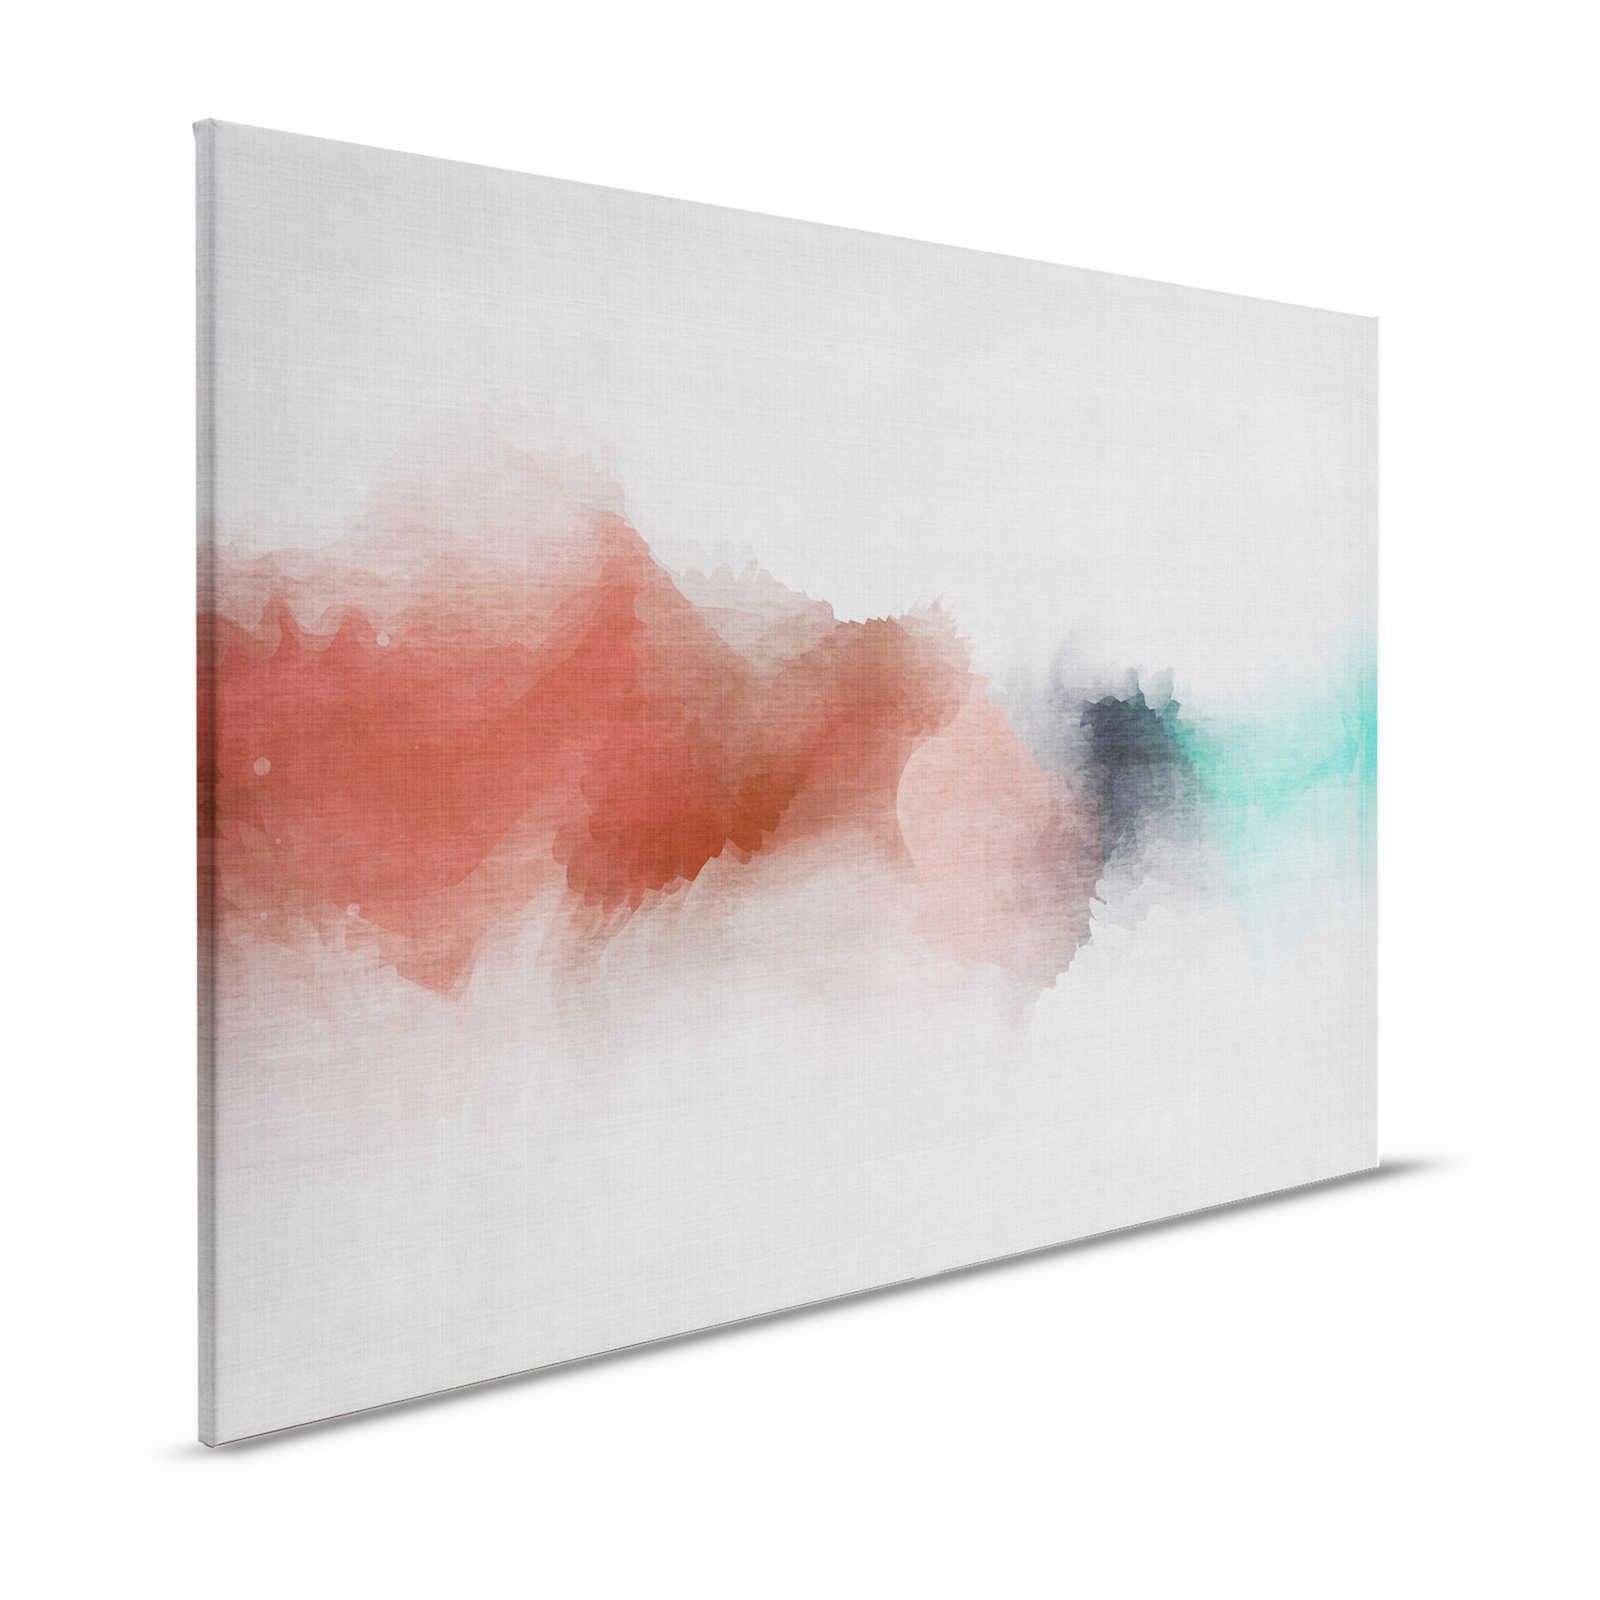 Daydream 2 - Toile aspect lin naturel avec tache de couleur style aquarelle - 1,20 m x 0,80 m
